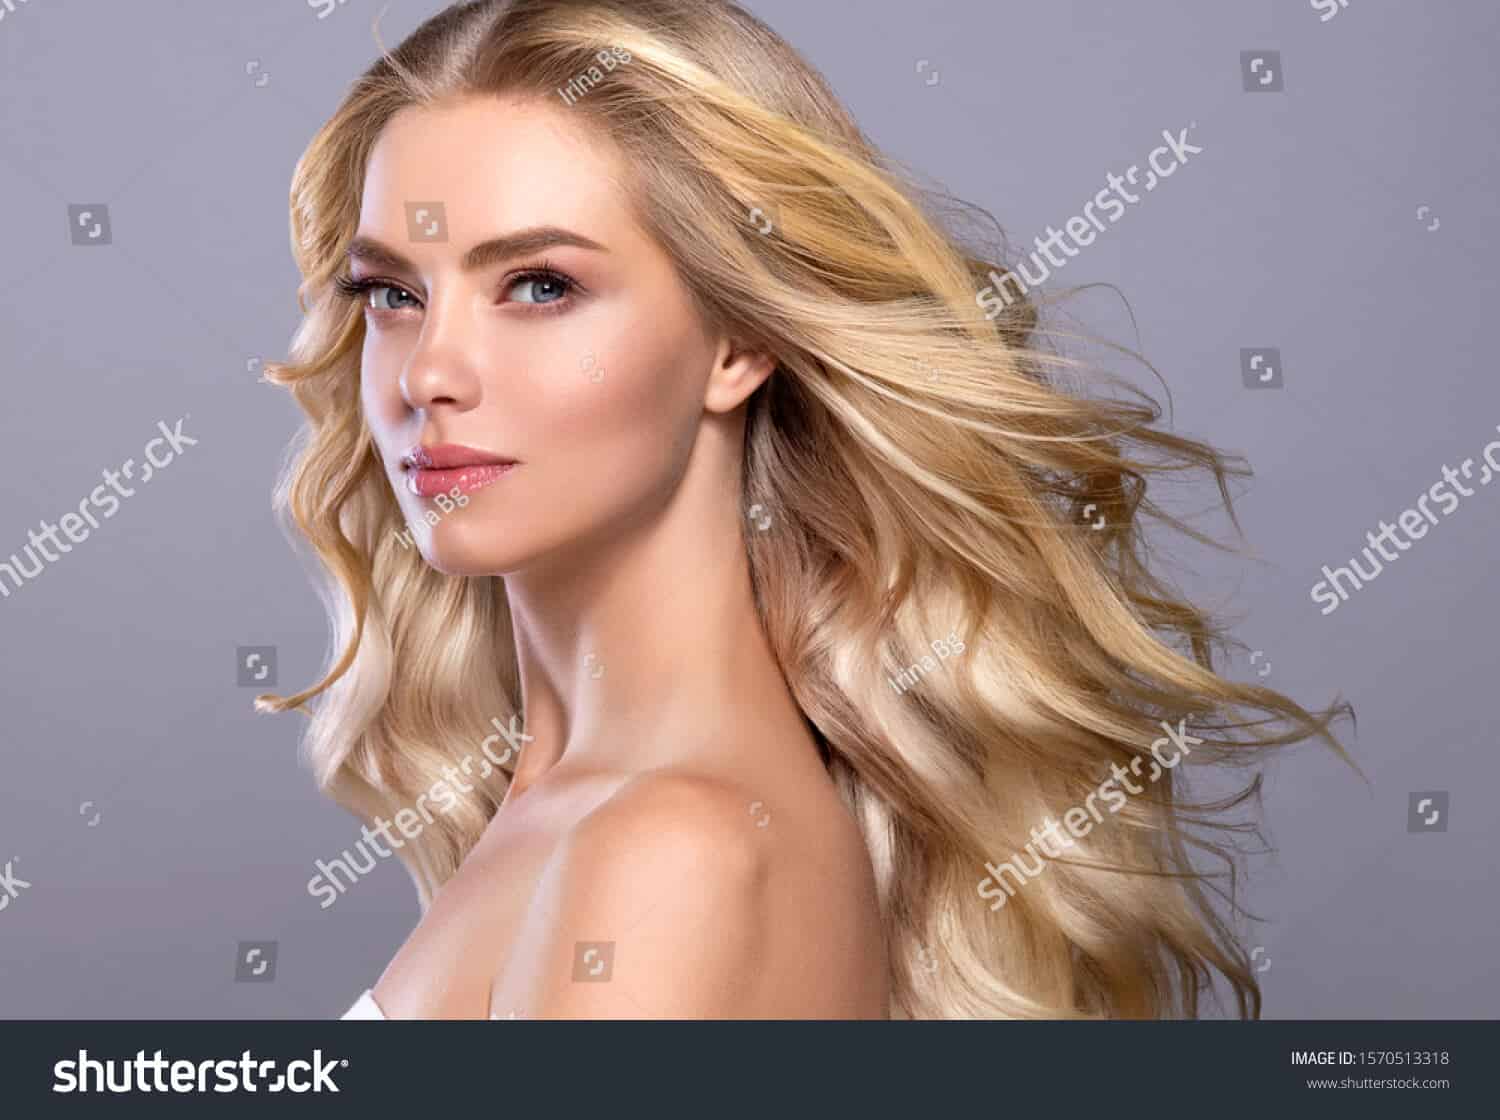 11 triệu hình ảnh mái tóc của các cô gái trẻ chất lượng cao trên Shutterstock